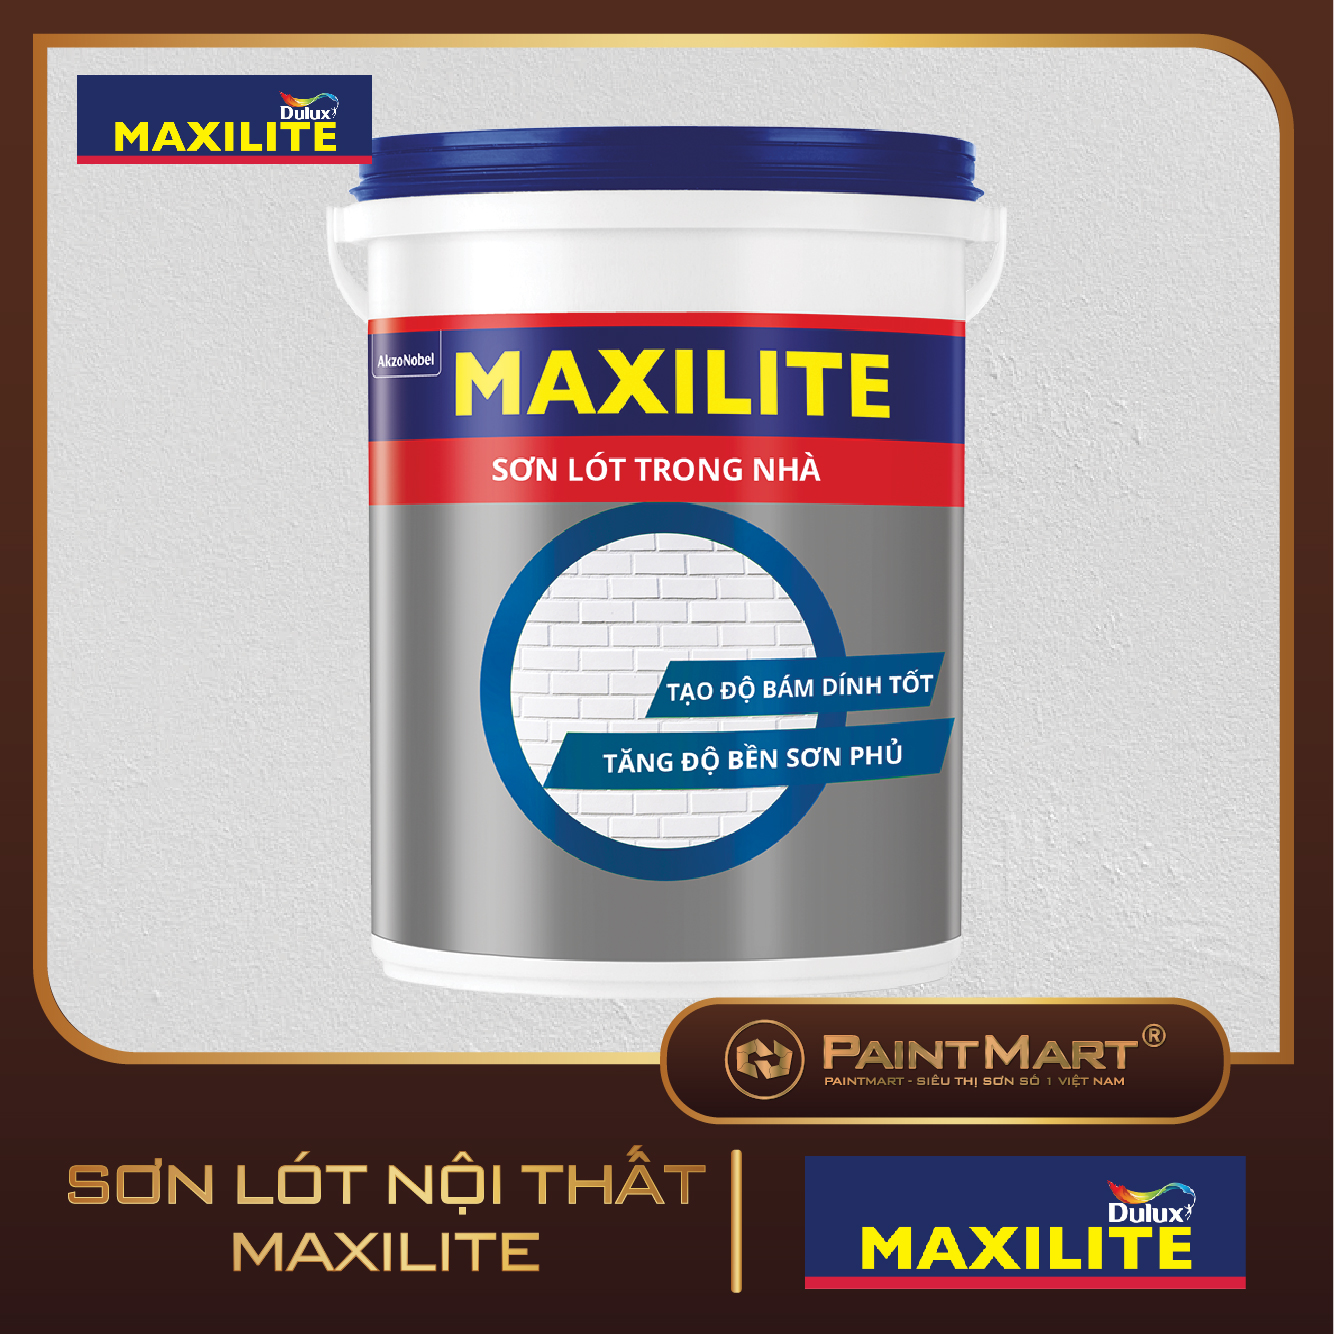 Hình ảnh sản phẩm sơn maxlite trong nhà  